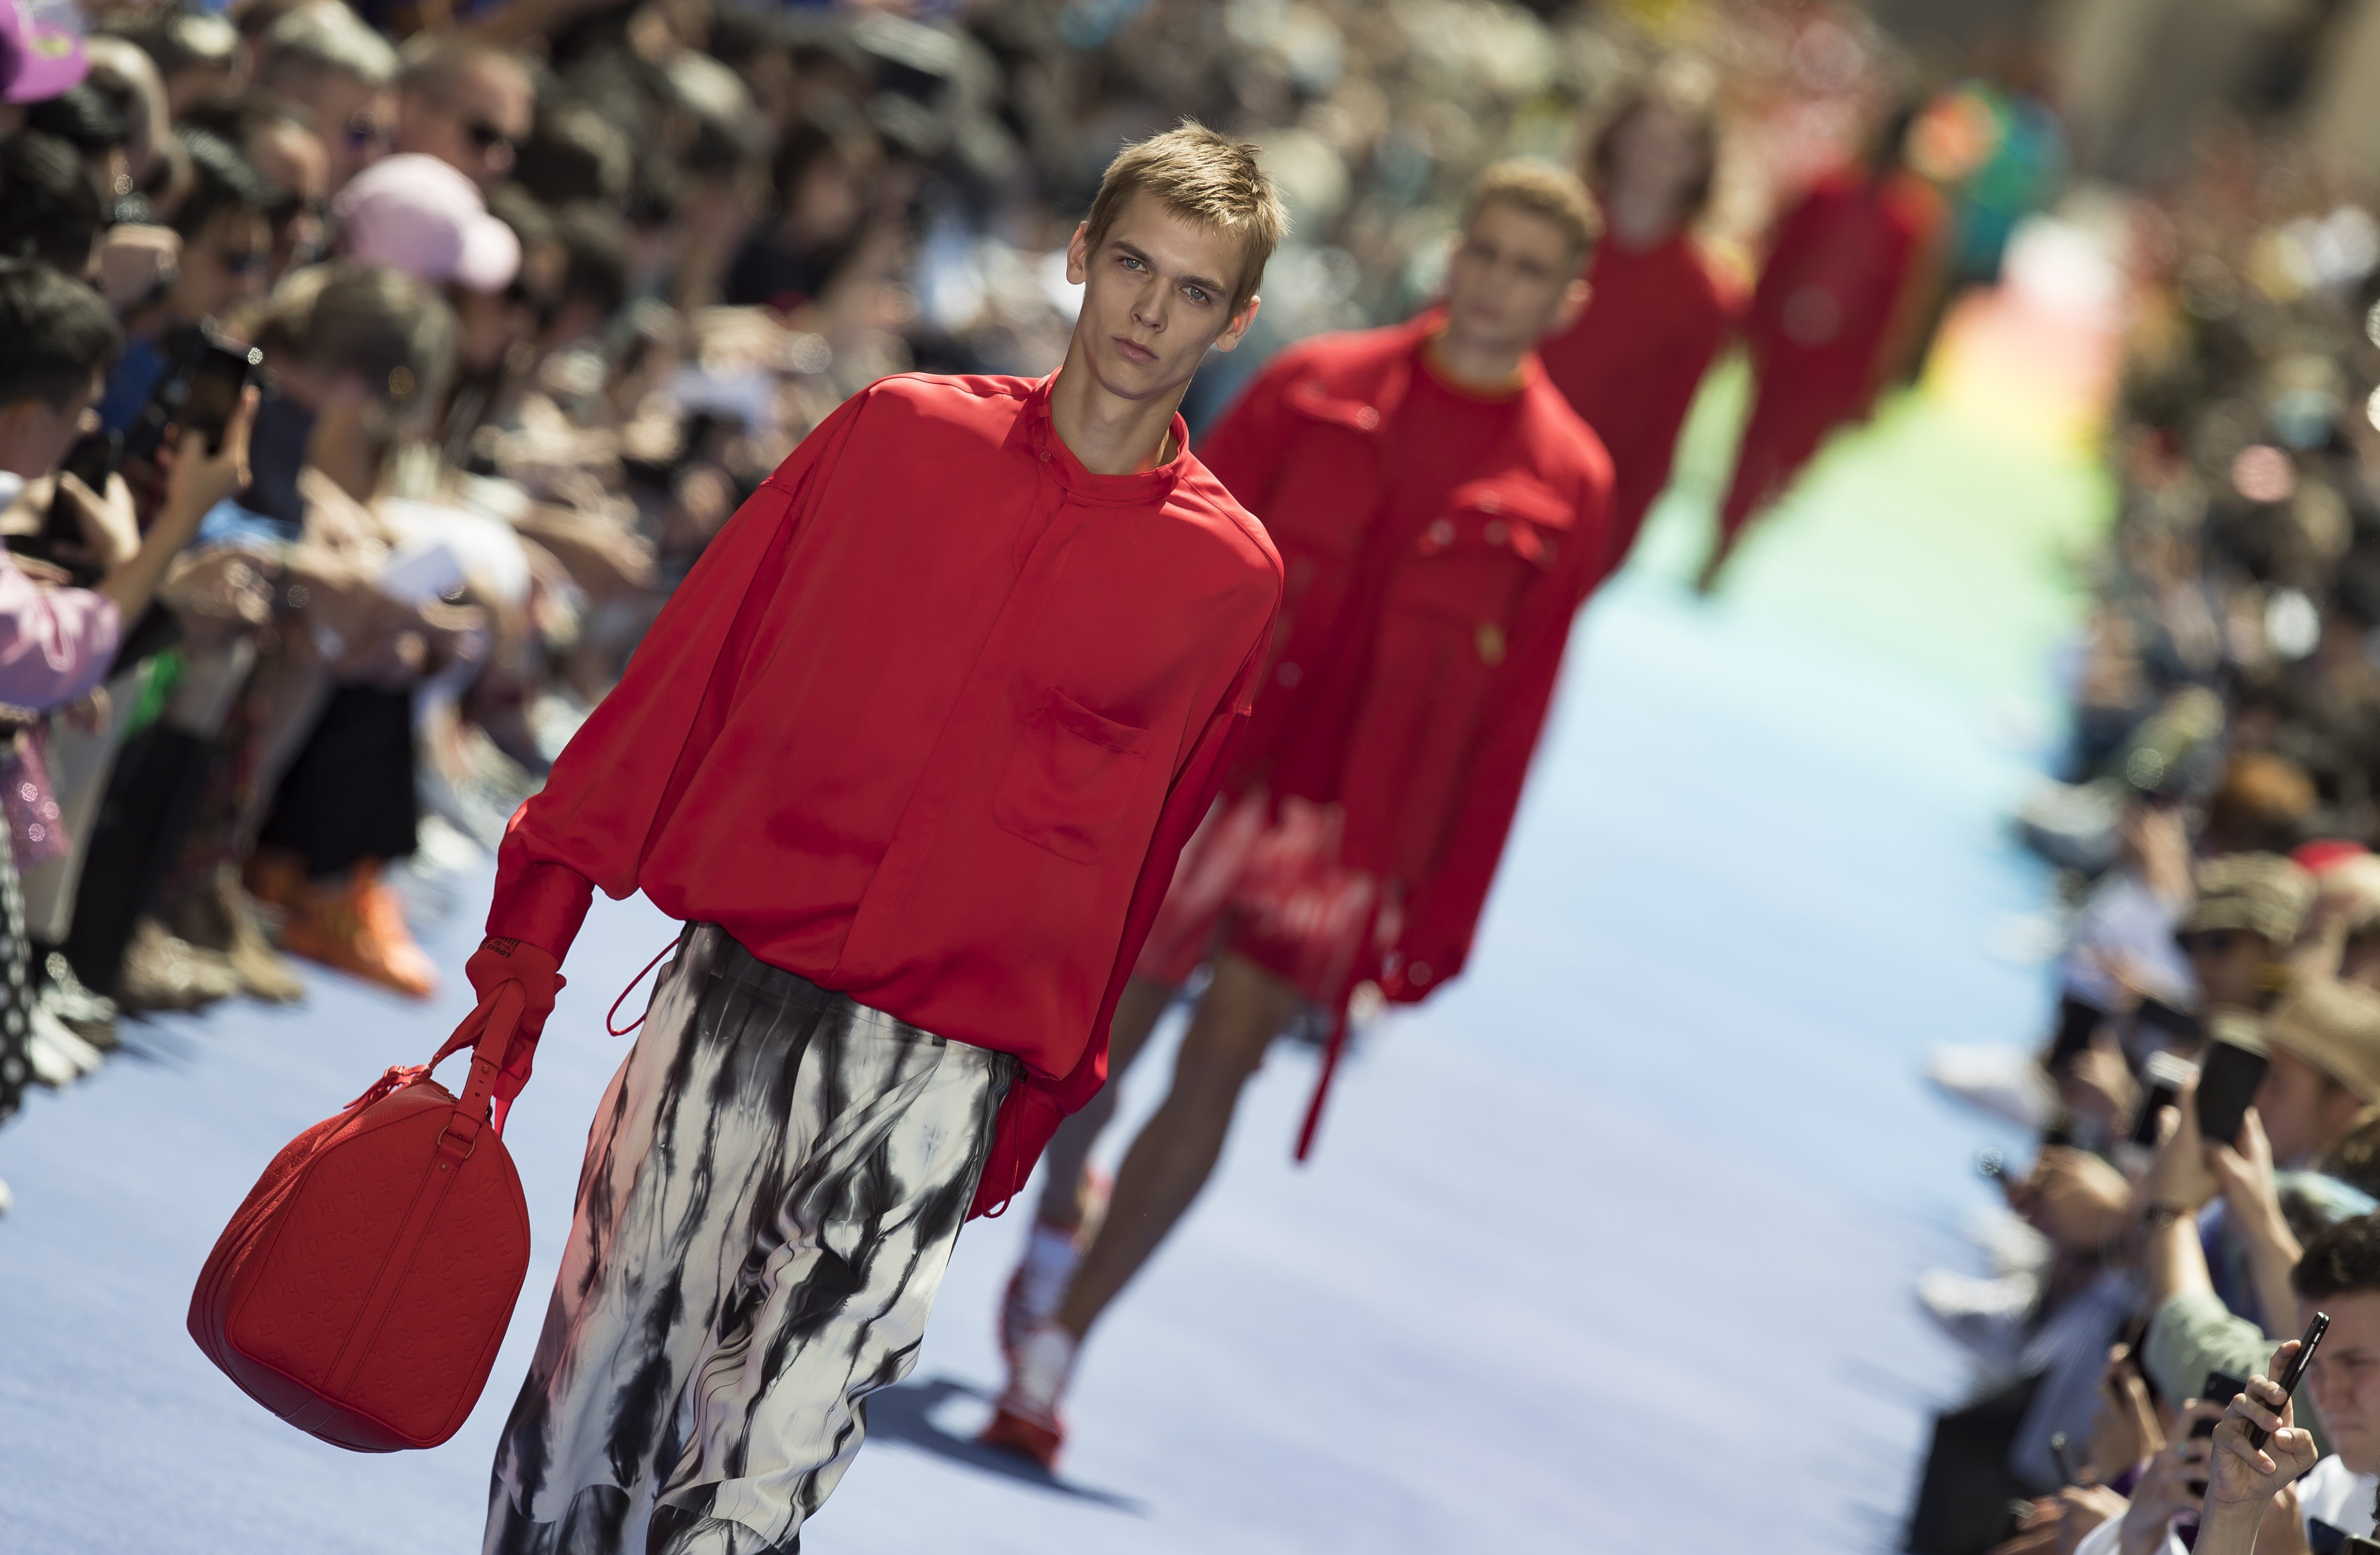 Louis Vuitton Spring-Summer 2023 Men's show pays a last tribute to Virgil  Abloh